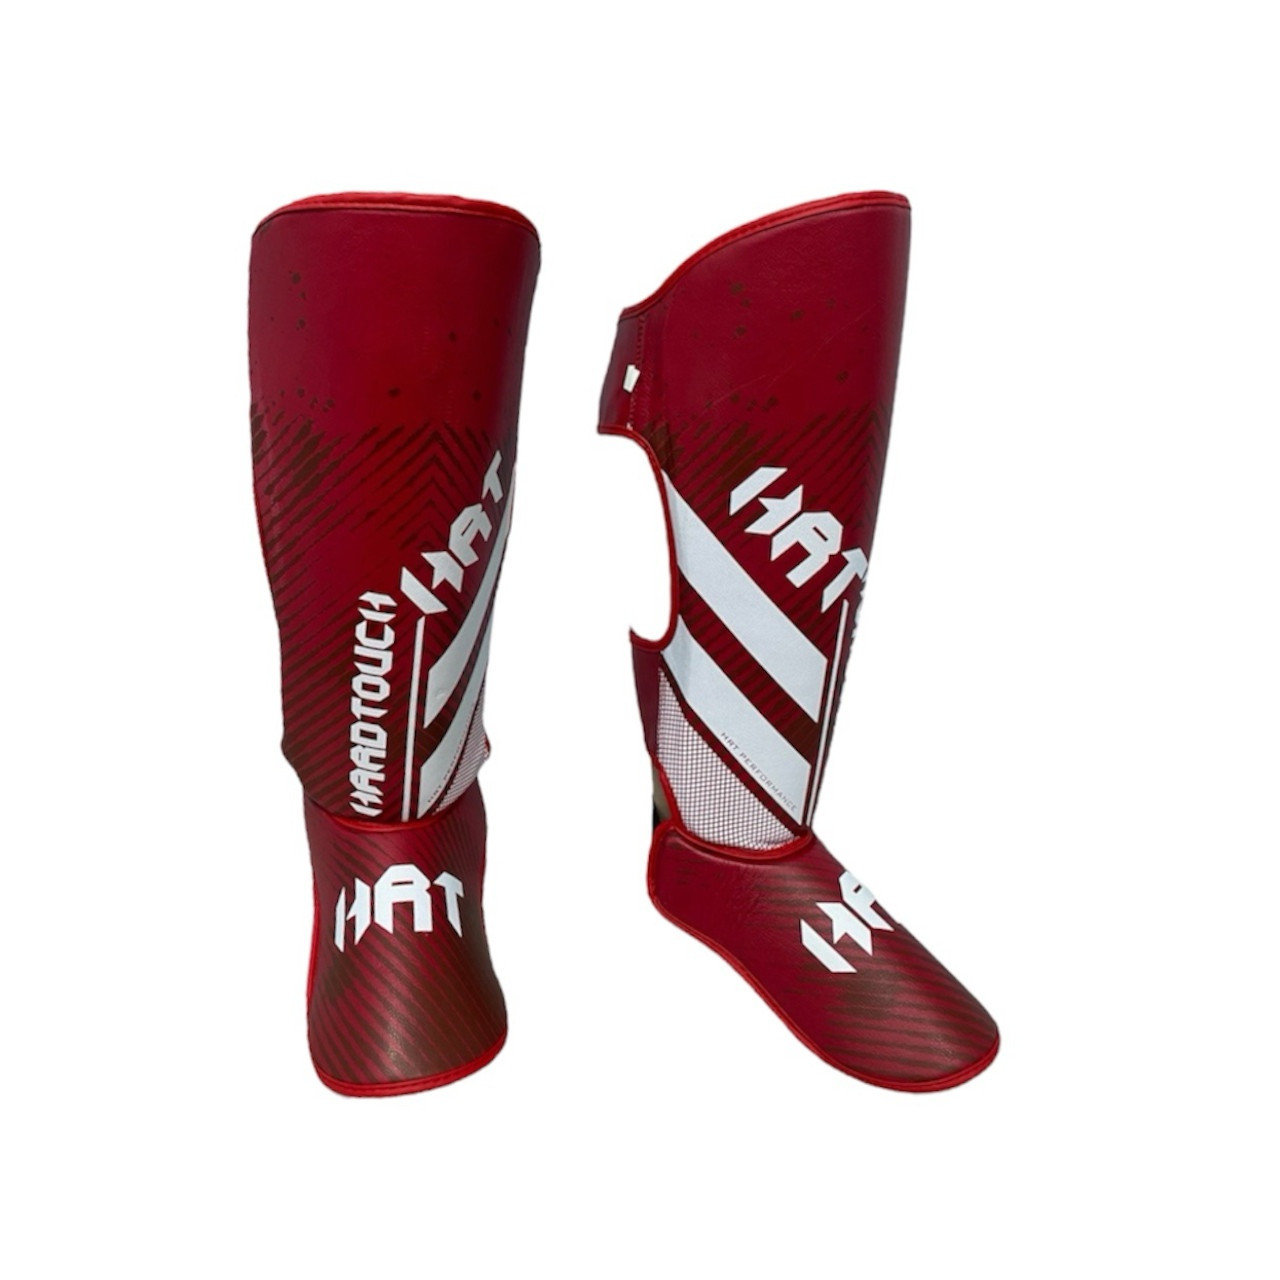 Захист гомілки та стопи, накладки на ноги для єдиноборств Hard Touch червона